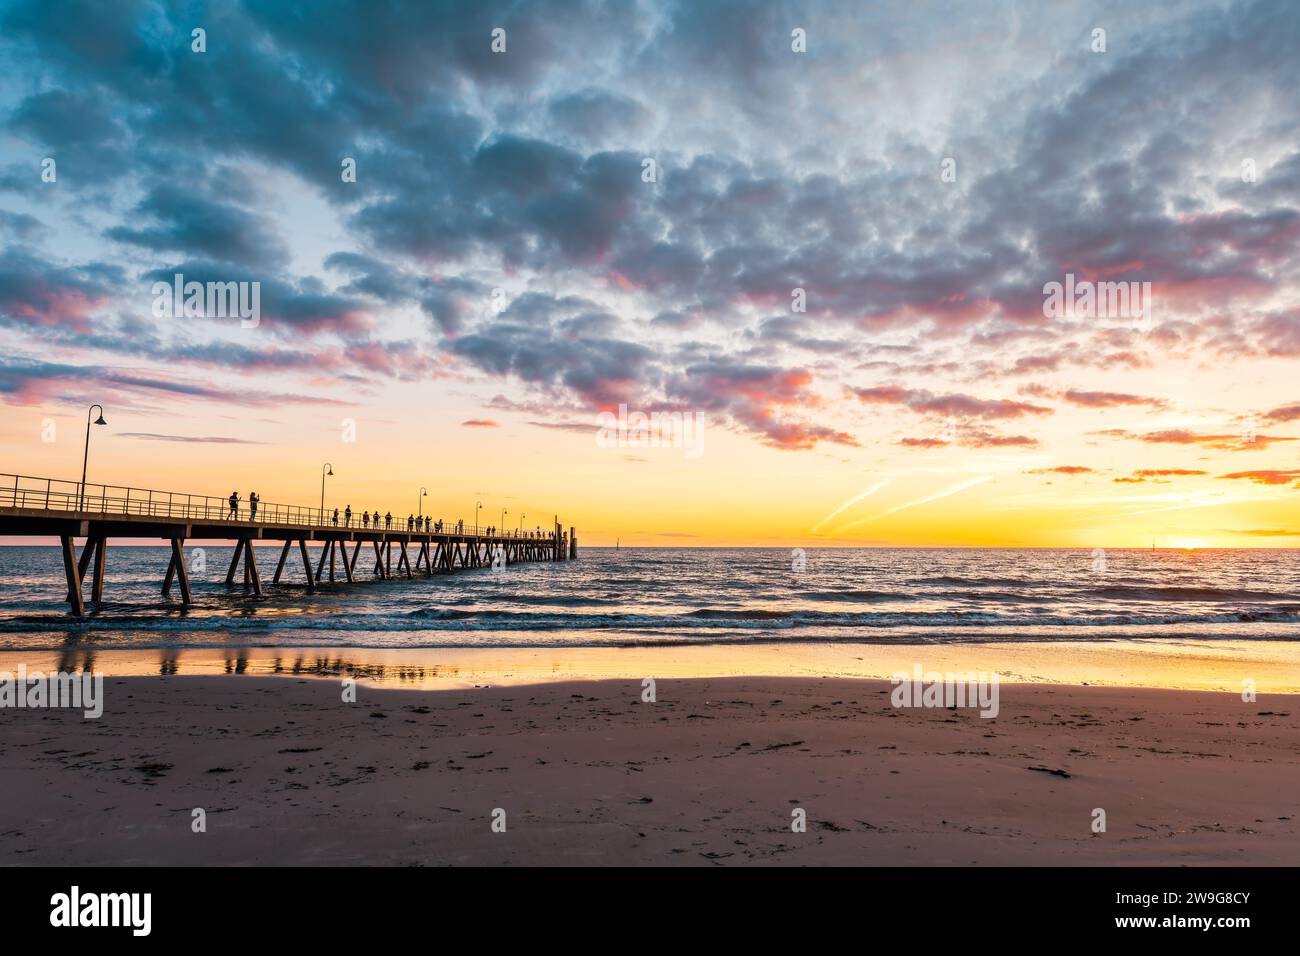 Il molo di Glenelg Beach ha una silhouette con persone che camminano al tramonto, Adelaide, Australia meridionale Foto Stock